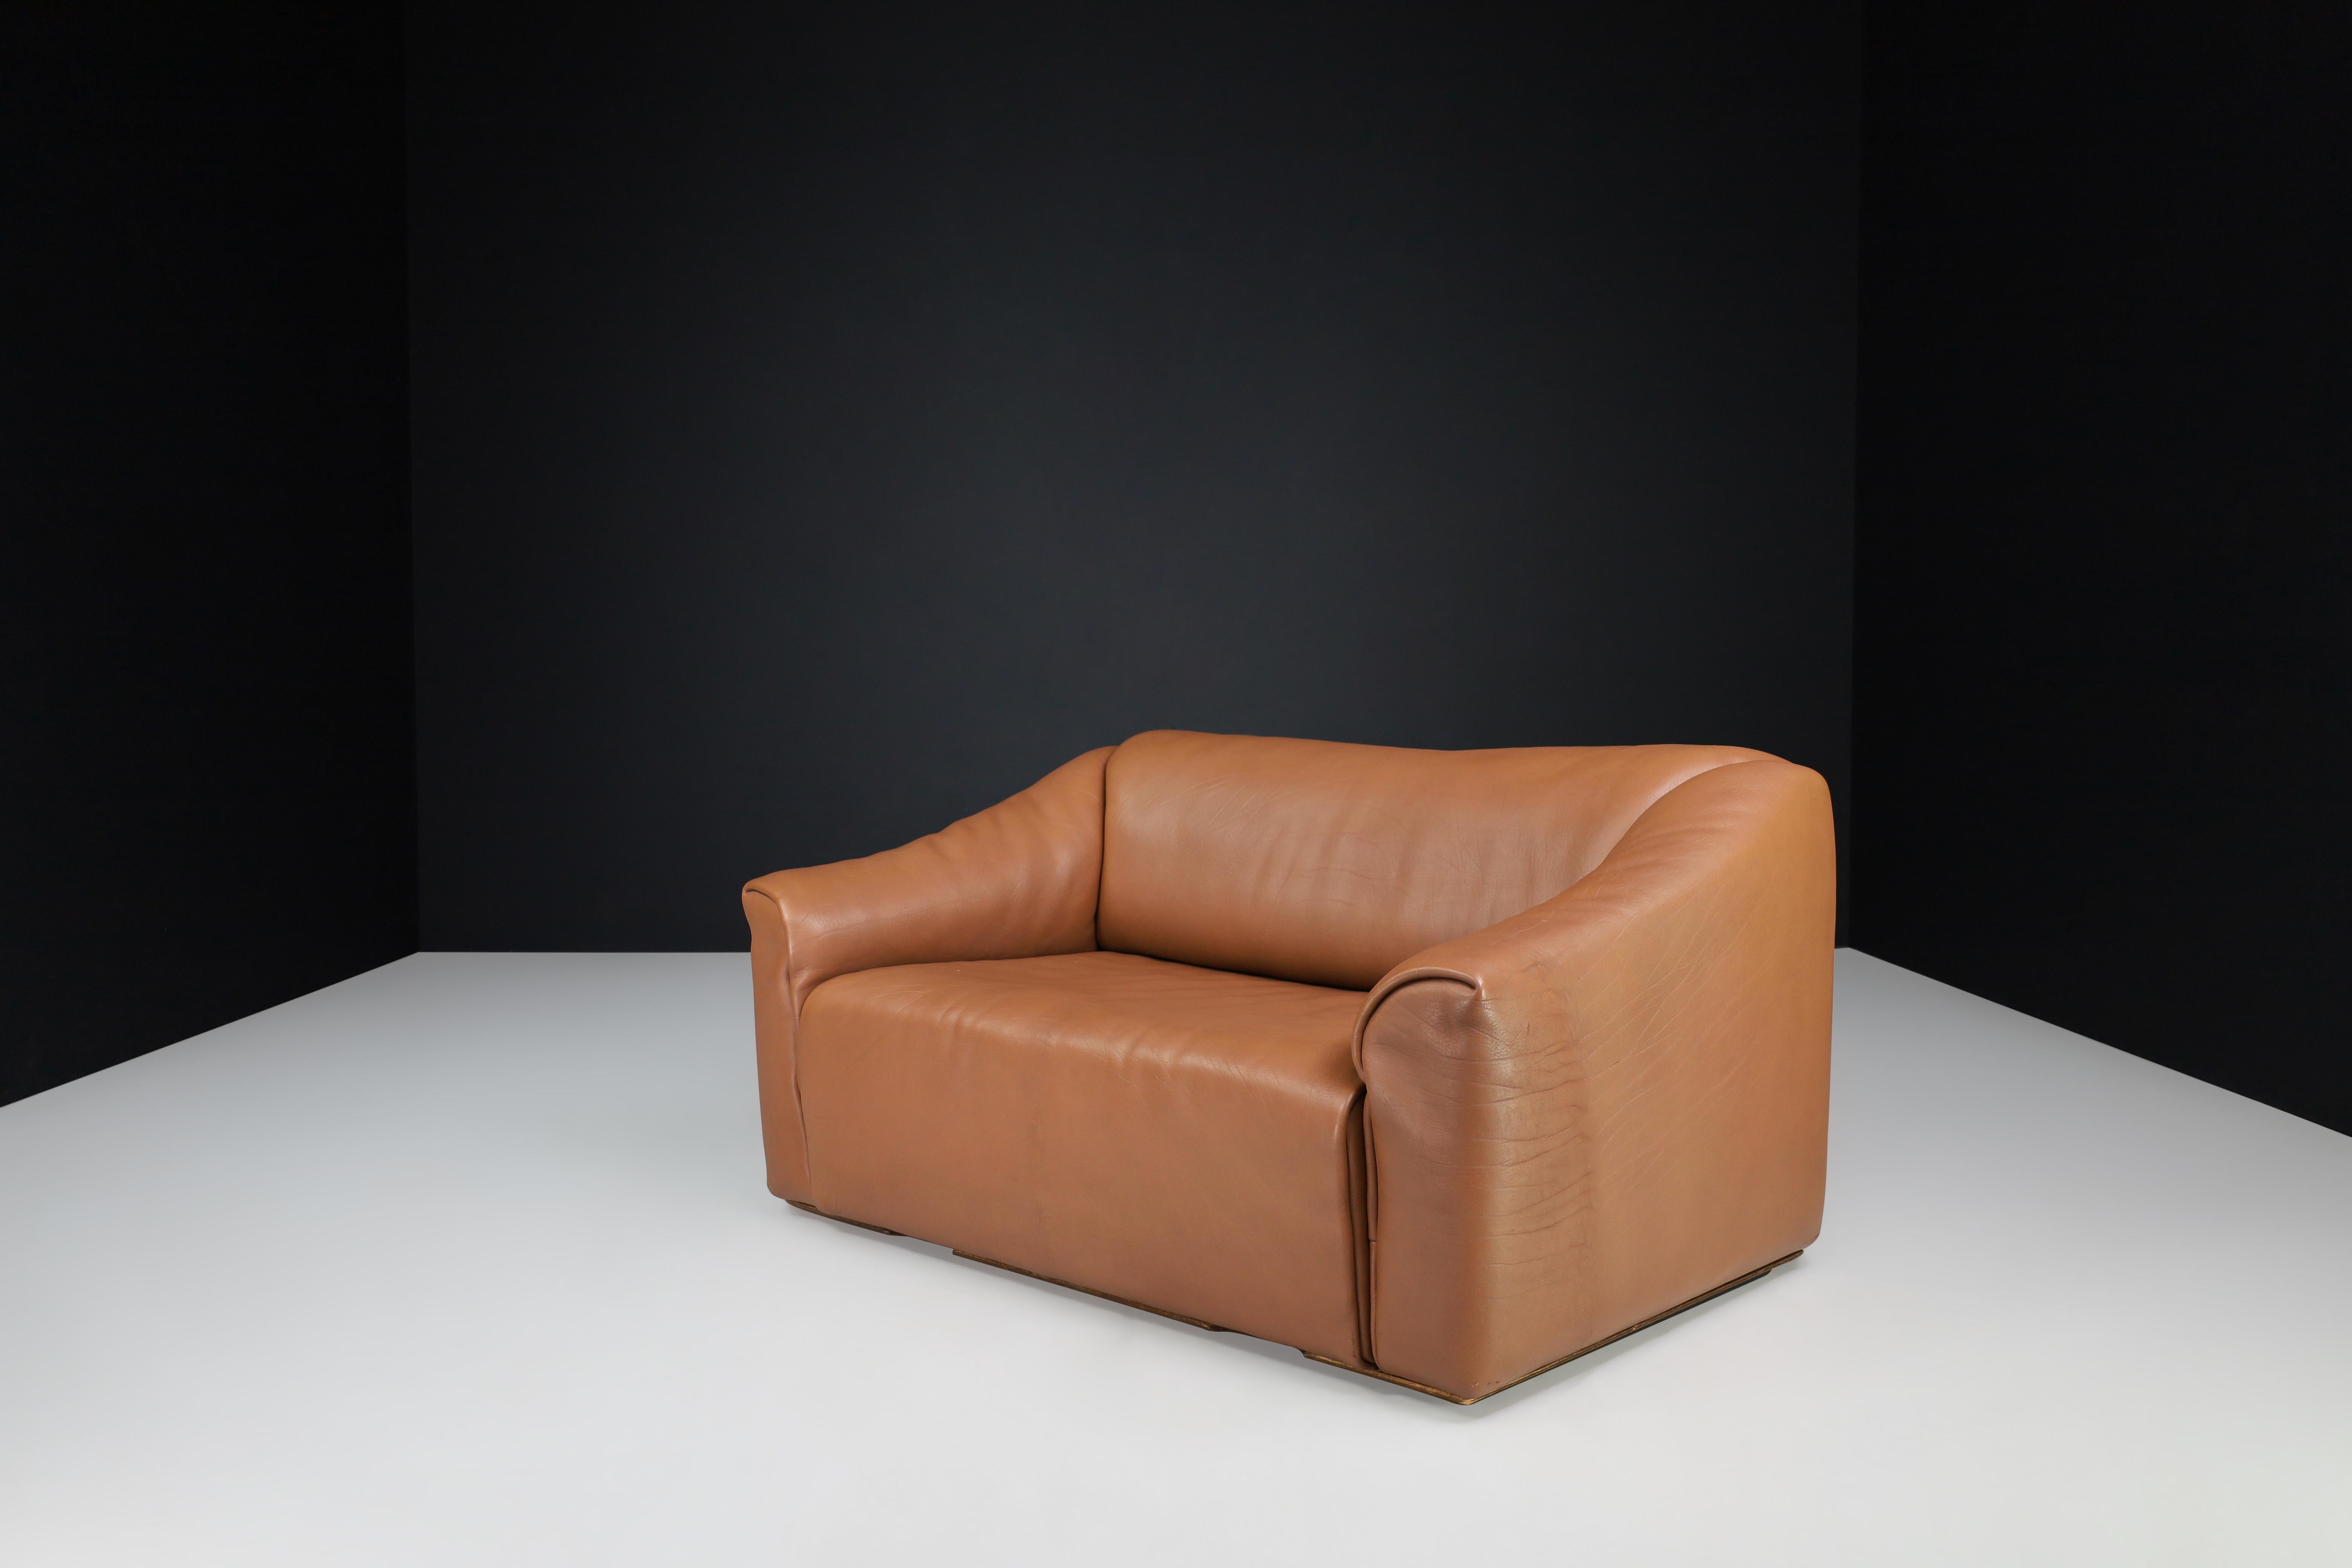 De Sede DS-47 canapé en cuir de cou brun de Suisse années 1970

Voici le canapé deux places en cuir De Sede DS-47, fabriqué dans les années 1970 en Suisse avec un grand souci du détail. Ce canapé est confortable et robuste et présente des